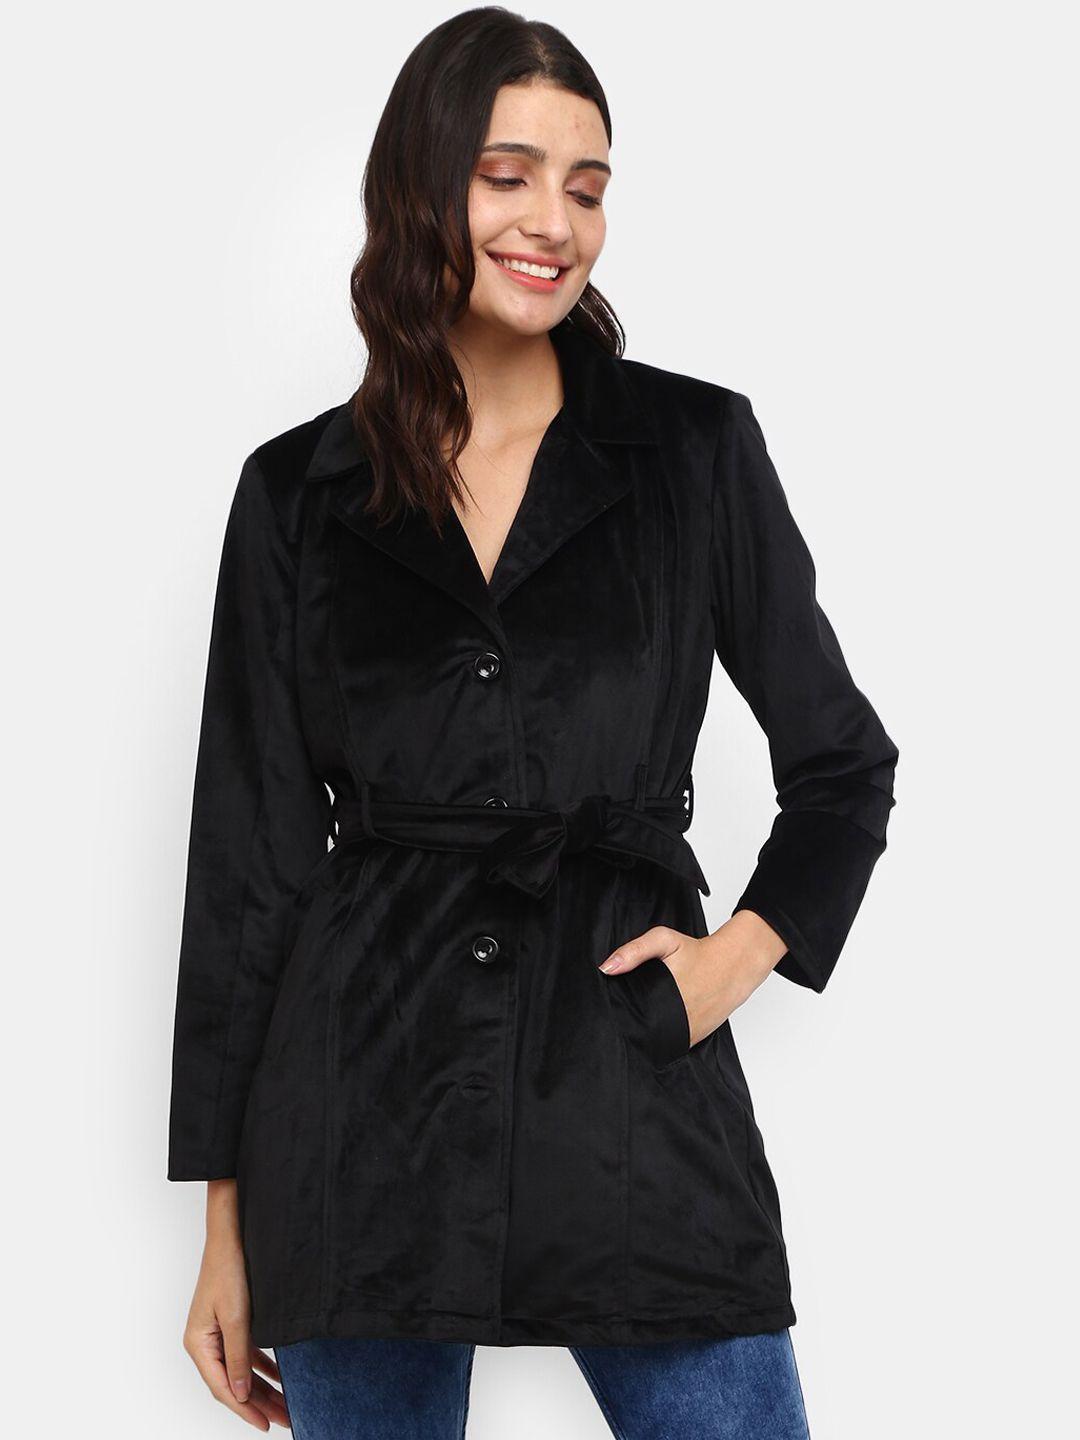 v-mart women black velvet tailored jacket